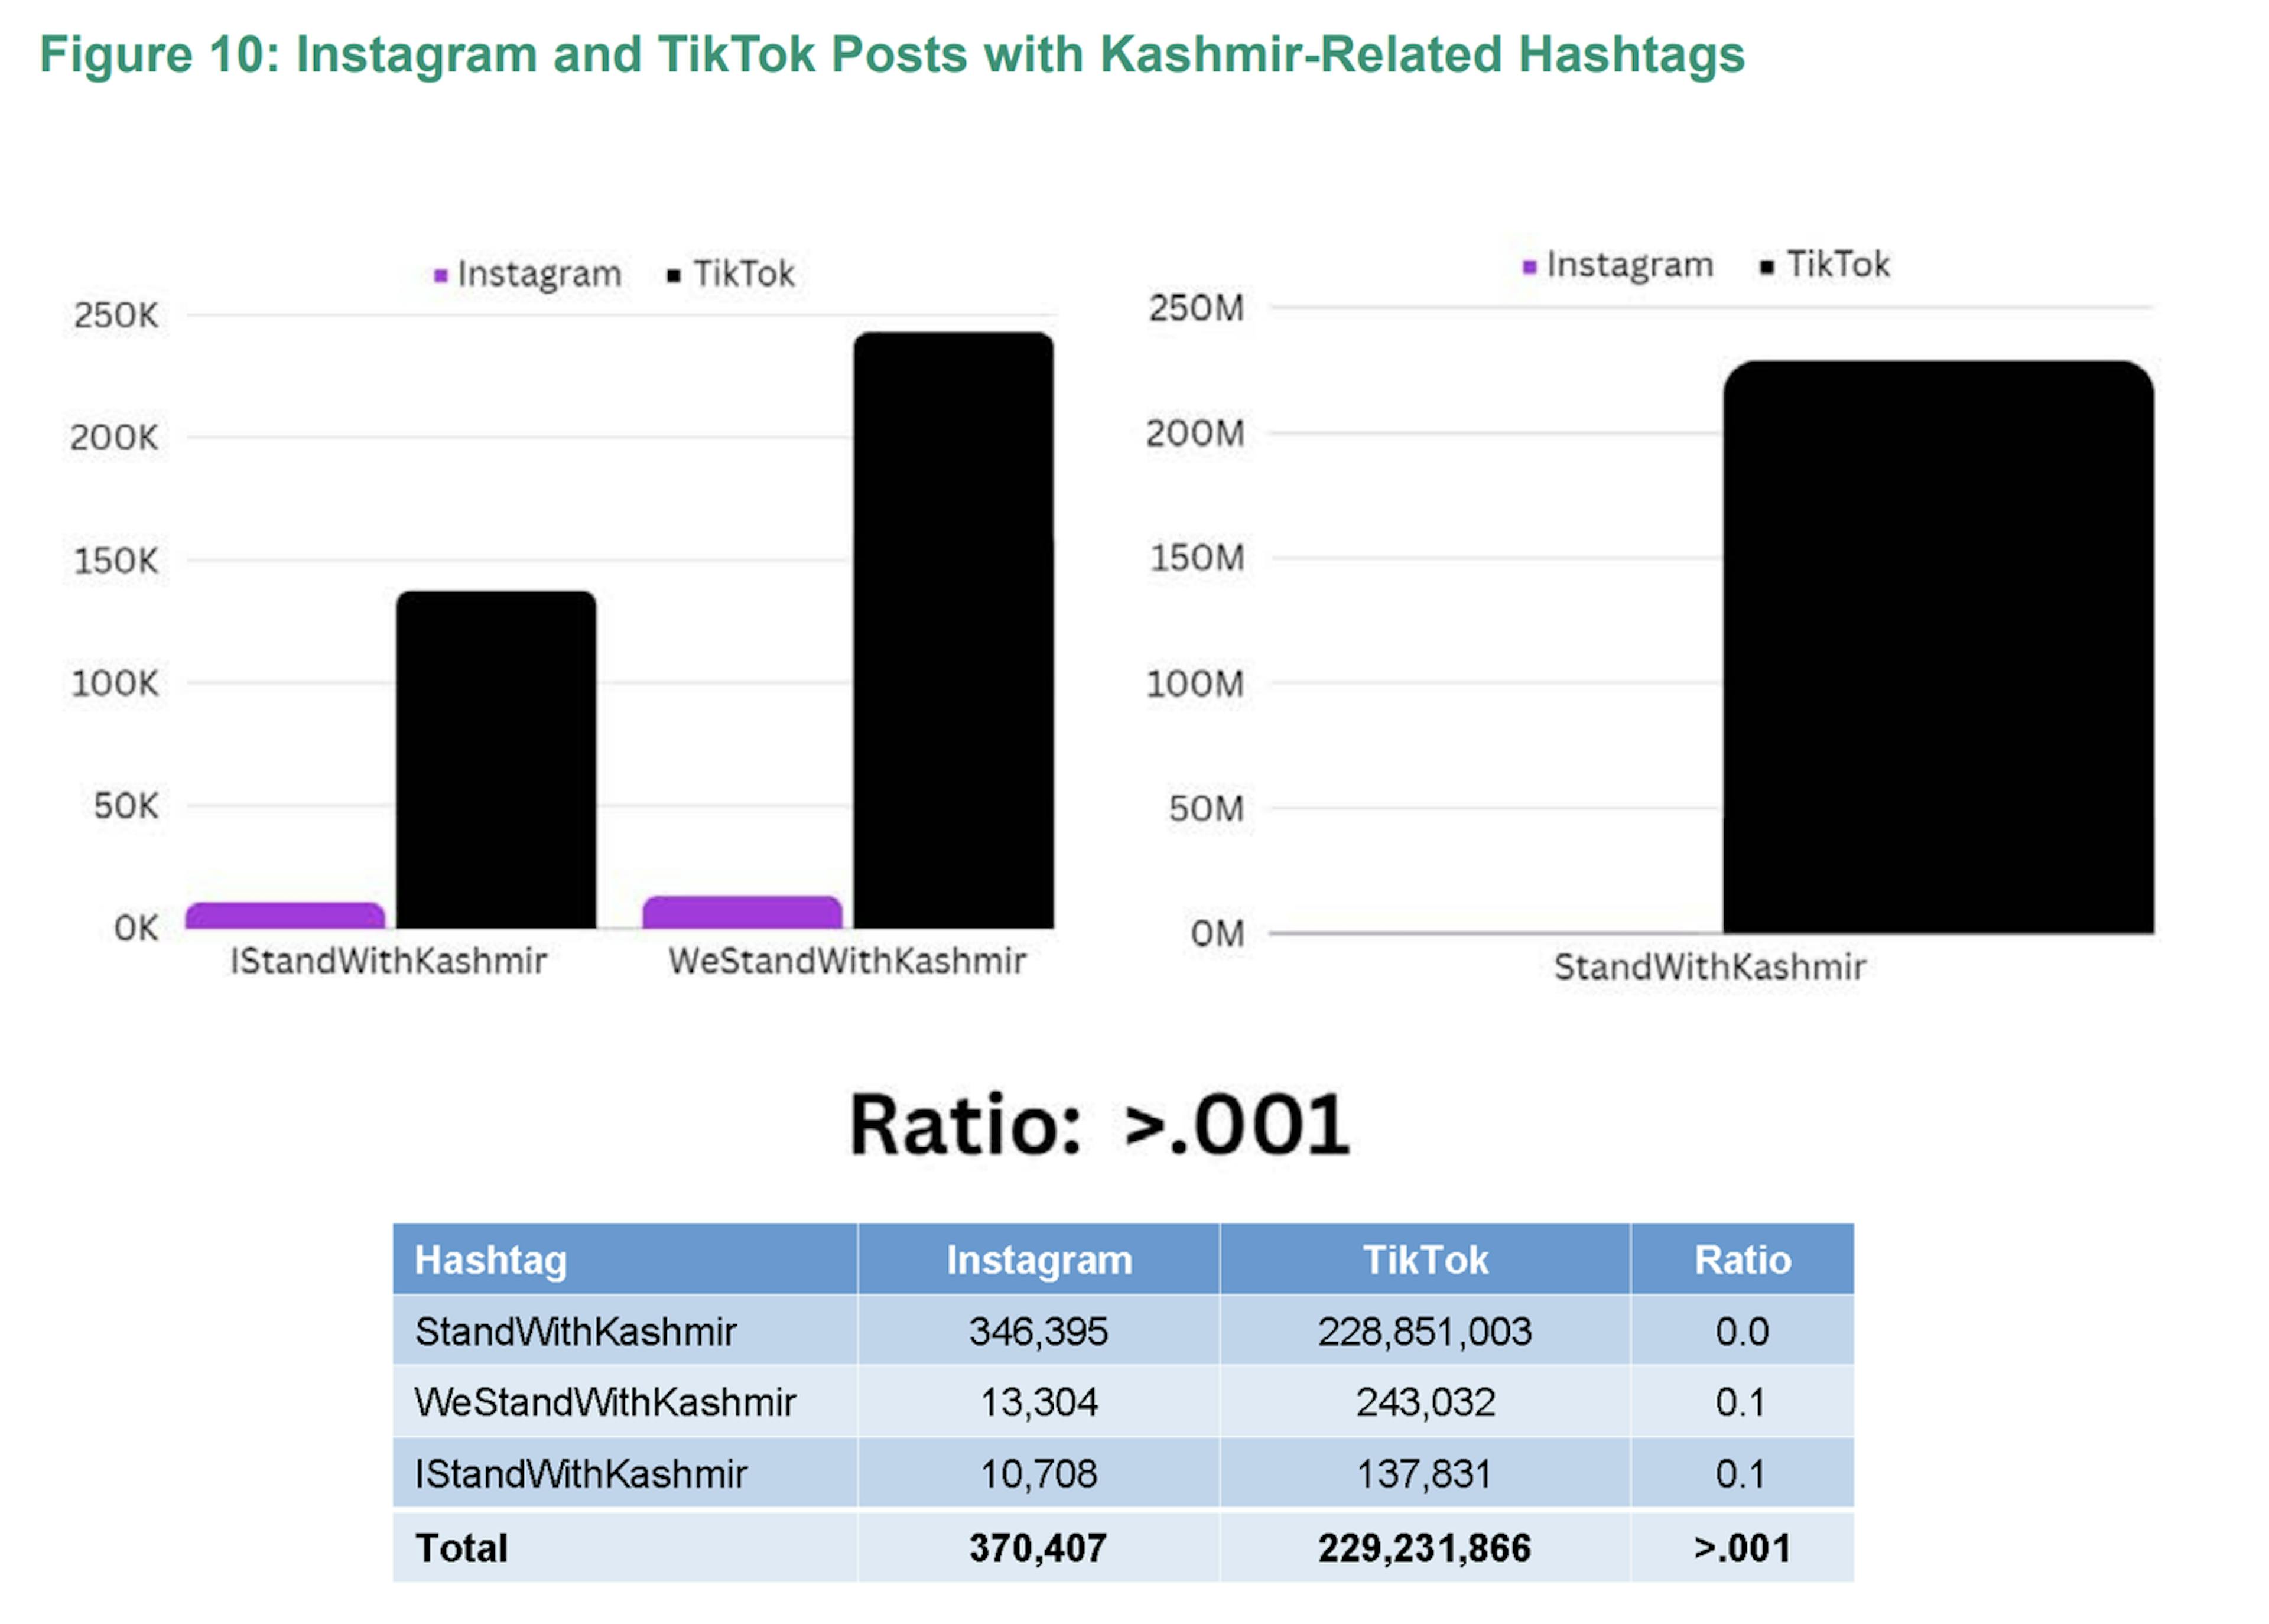 TikTok 上带有克什米尔相关主题标签的帖子数量要多得多，TikTok 上的数量比 Instagram 上的数量多 600 多倍。